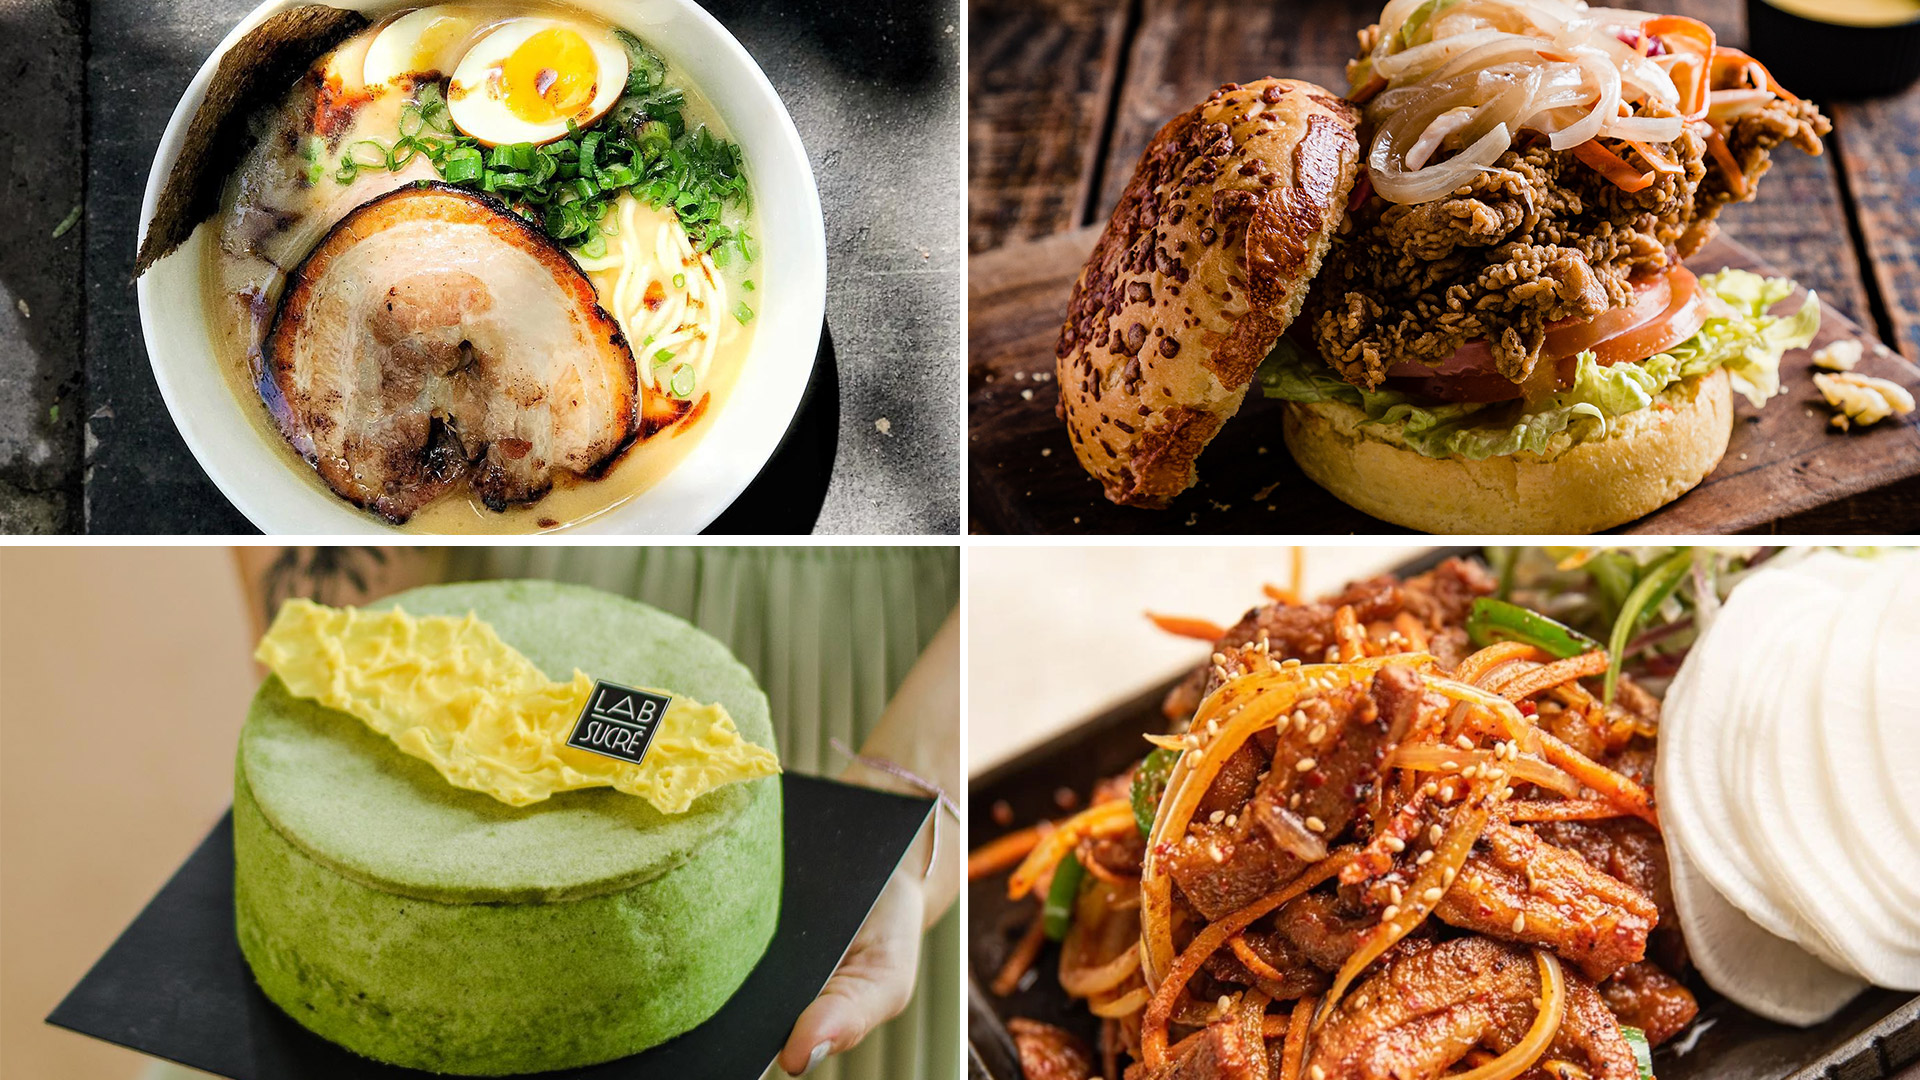 Qué comer en Corea del Sur: platos típicos de la gastronomía coreana